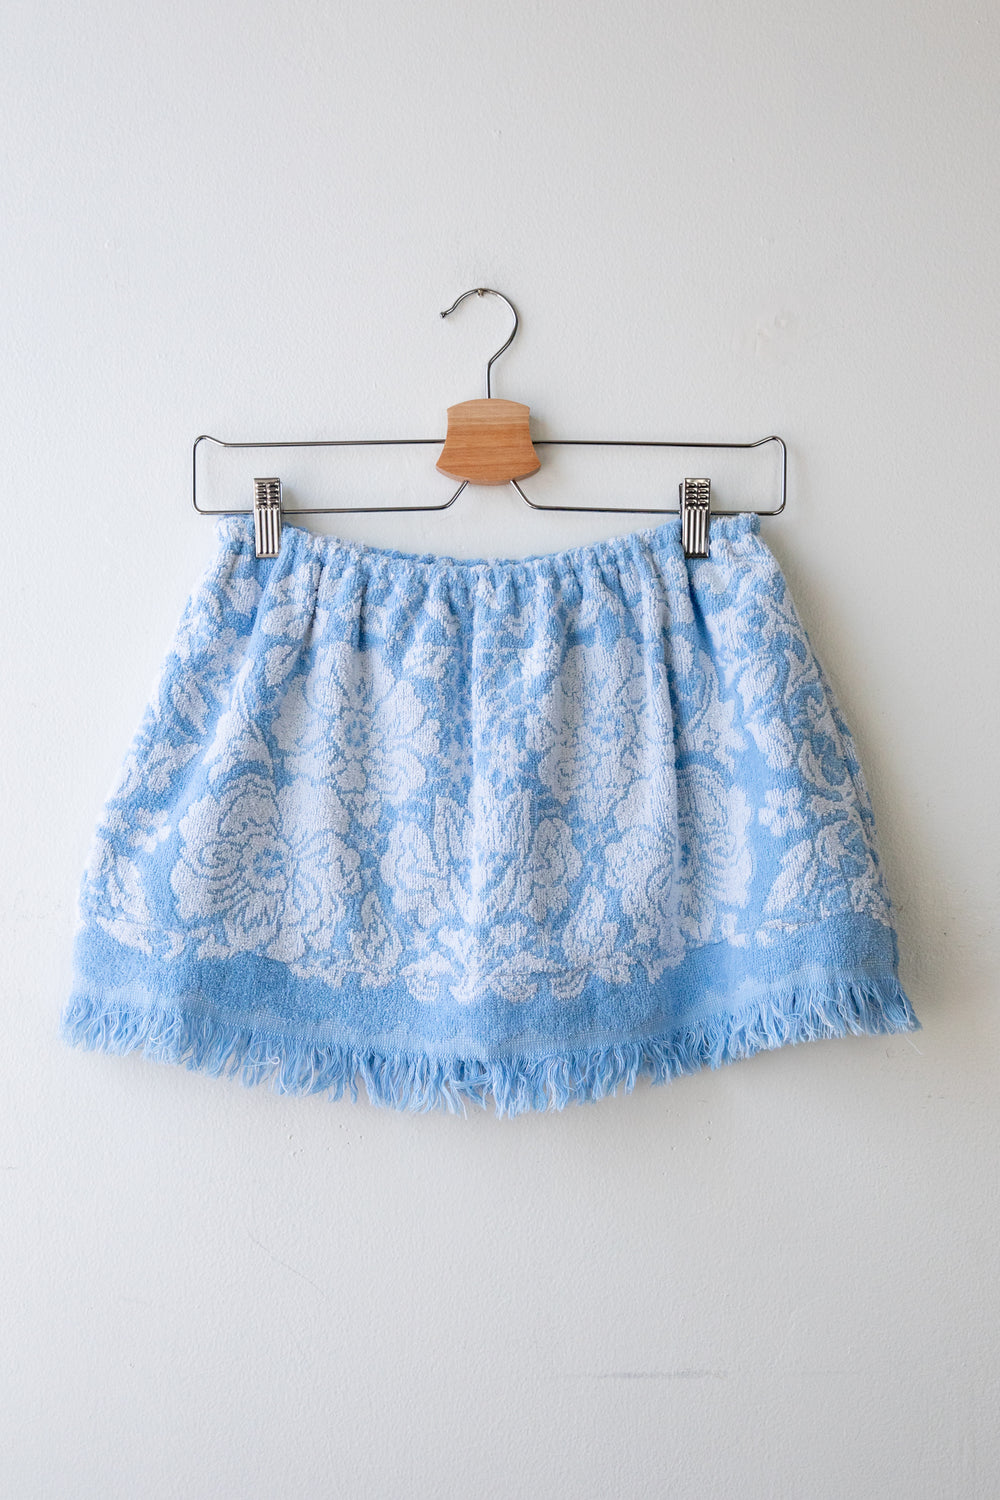 Blue Towel Tube Top Skirt